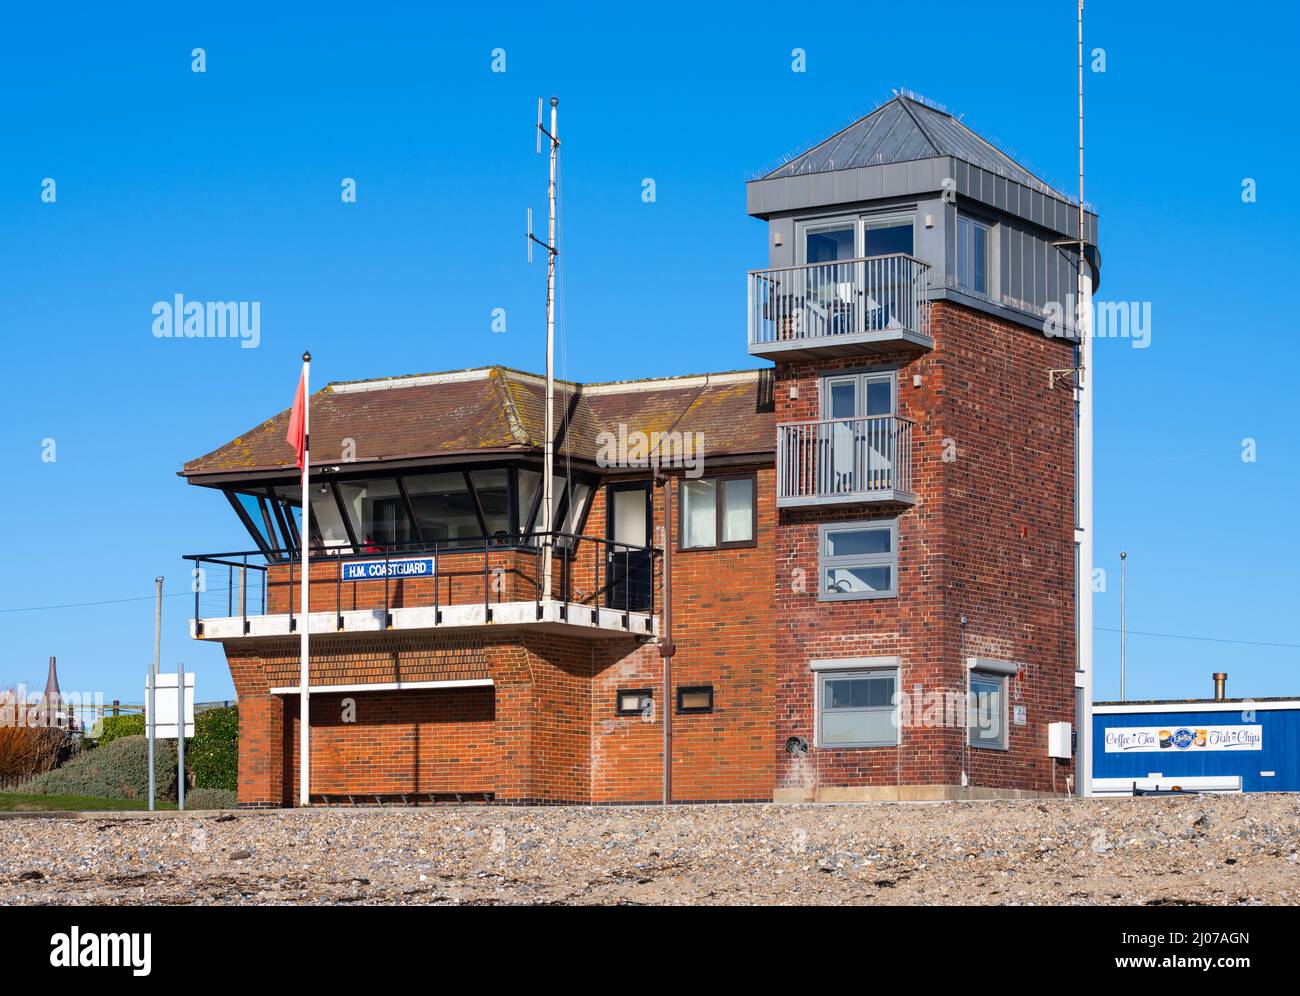 Tour de garde-côtes H.M. au bord de mer à Littlehampton, West Sussex, Angleterre, Royaume-Uni. Pris en 2022 après le travail effectué sur le côté droit du bâtiment. Banque D'Images